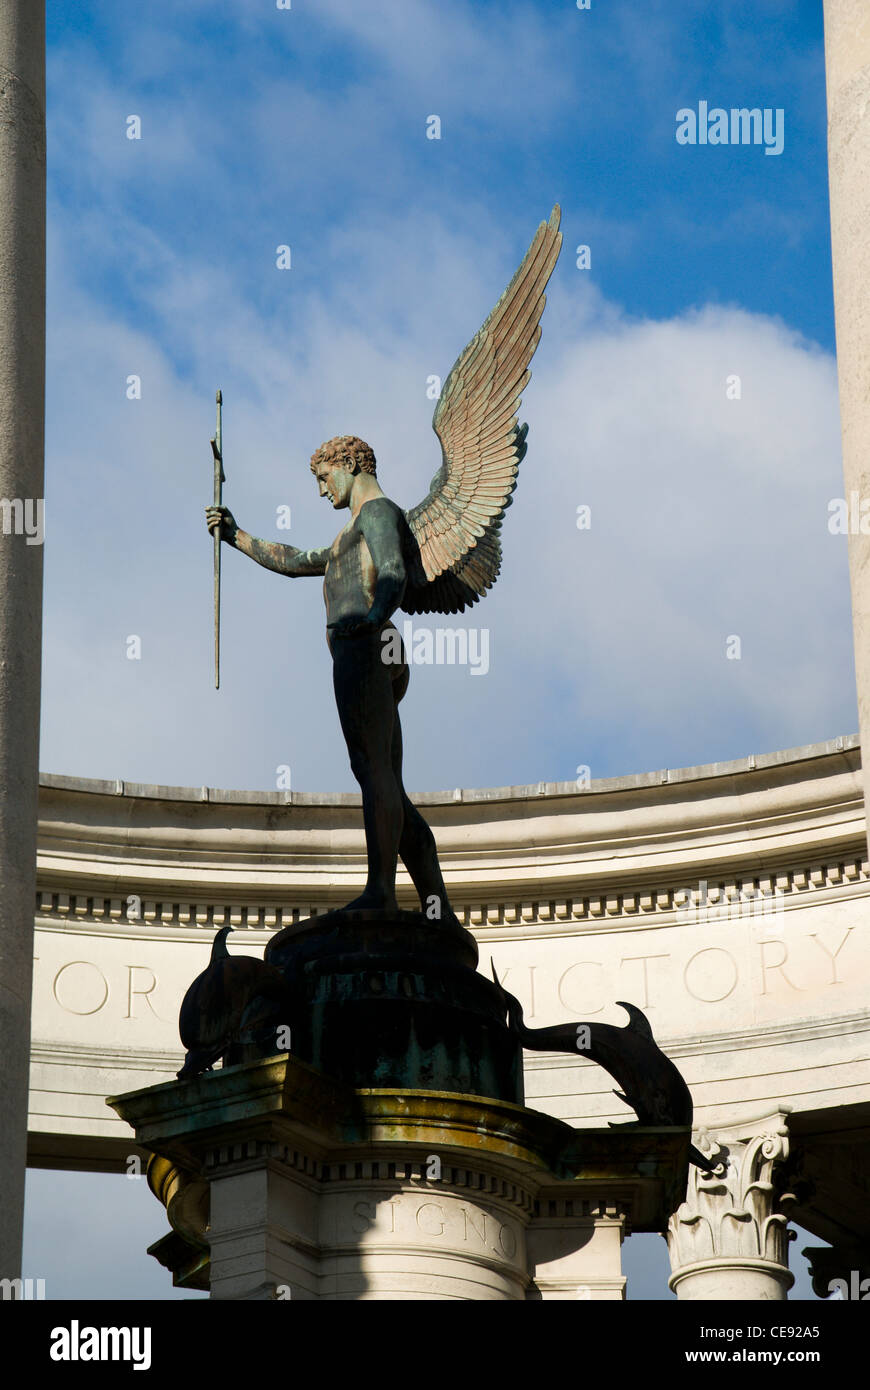 Détail de l'ange à l'épée de la Wales National War Memorial, Alexandra Gardens, Cathays Park, Cardiff, Pays de Galles, Royaume-Uni. Banque D'Images